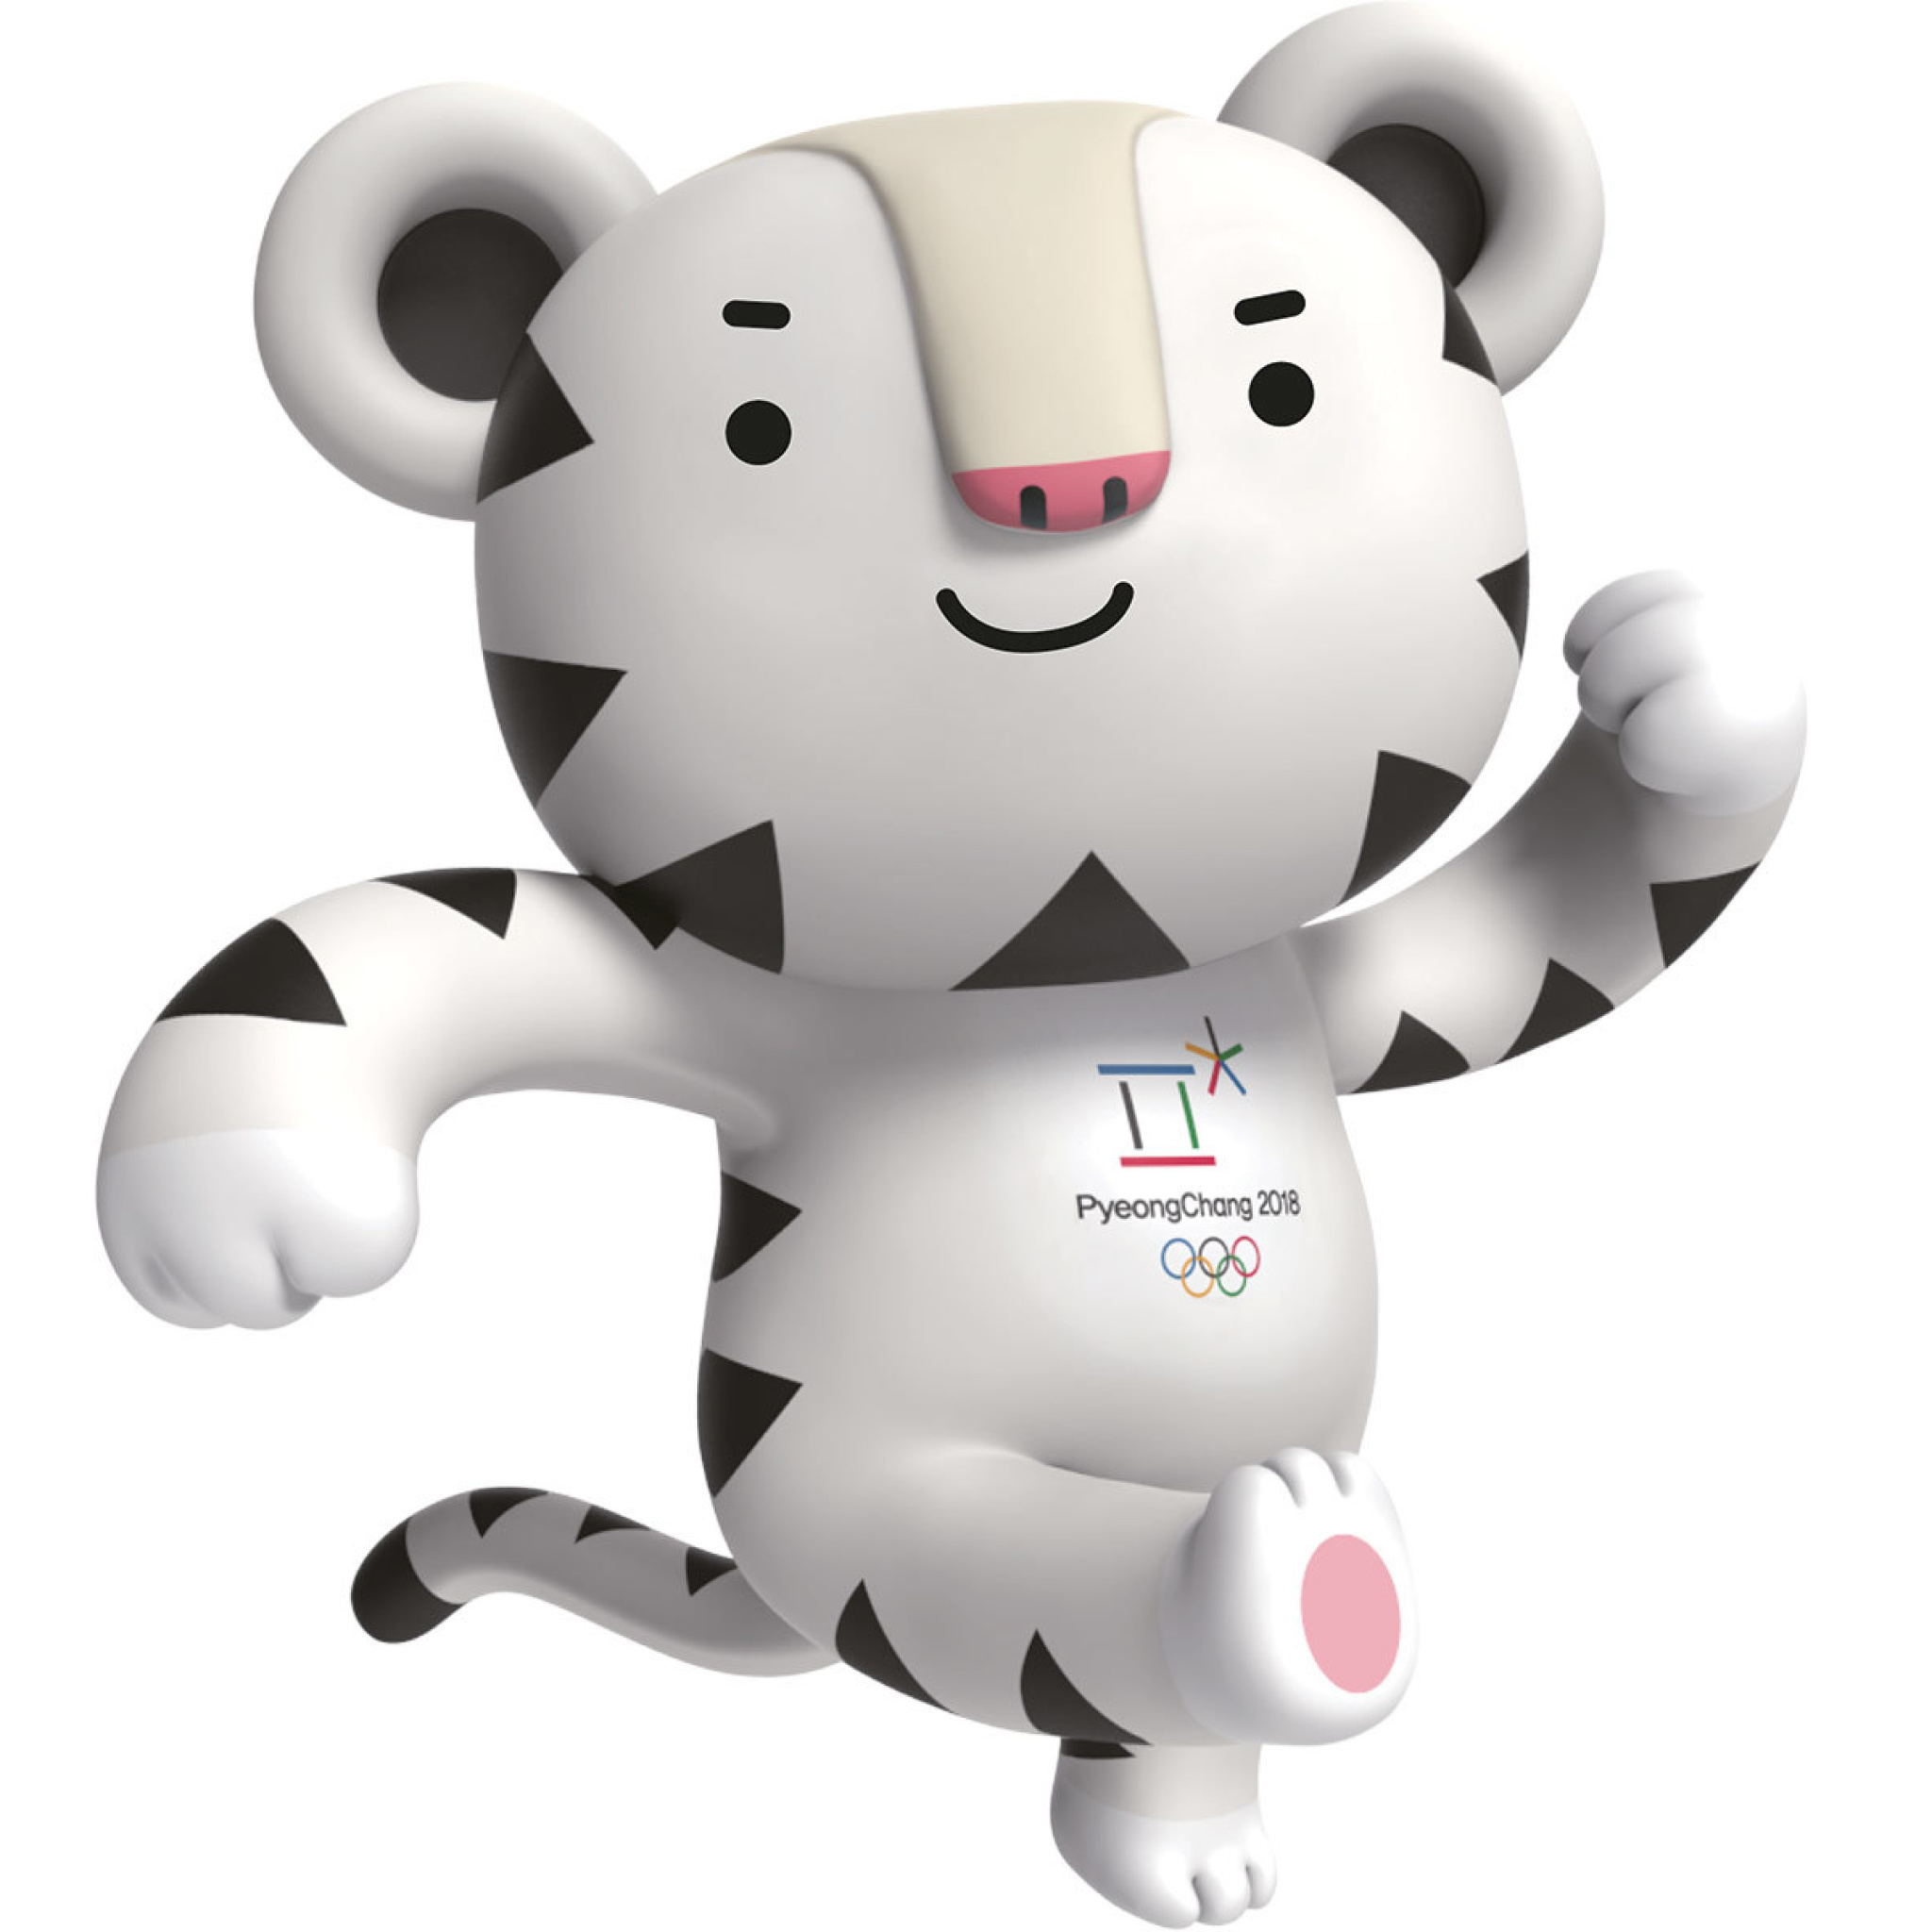 Sfondi 2018 Winter Olympics Pyeongchang Mascot 2048x2048